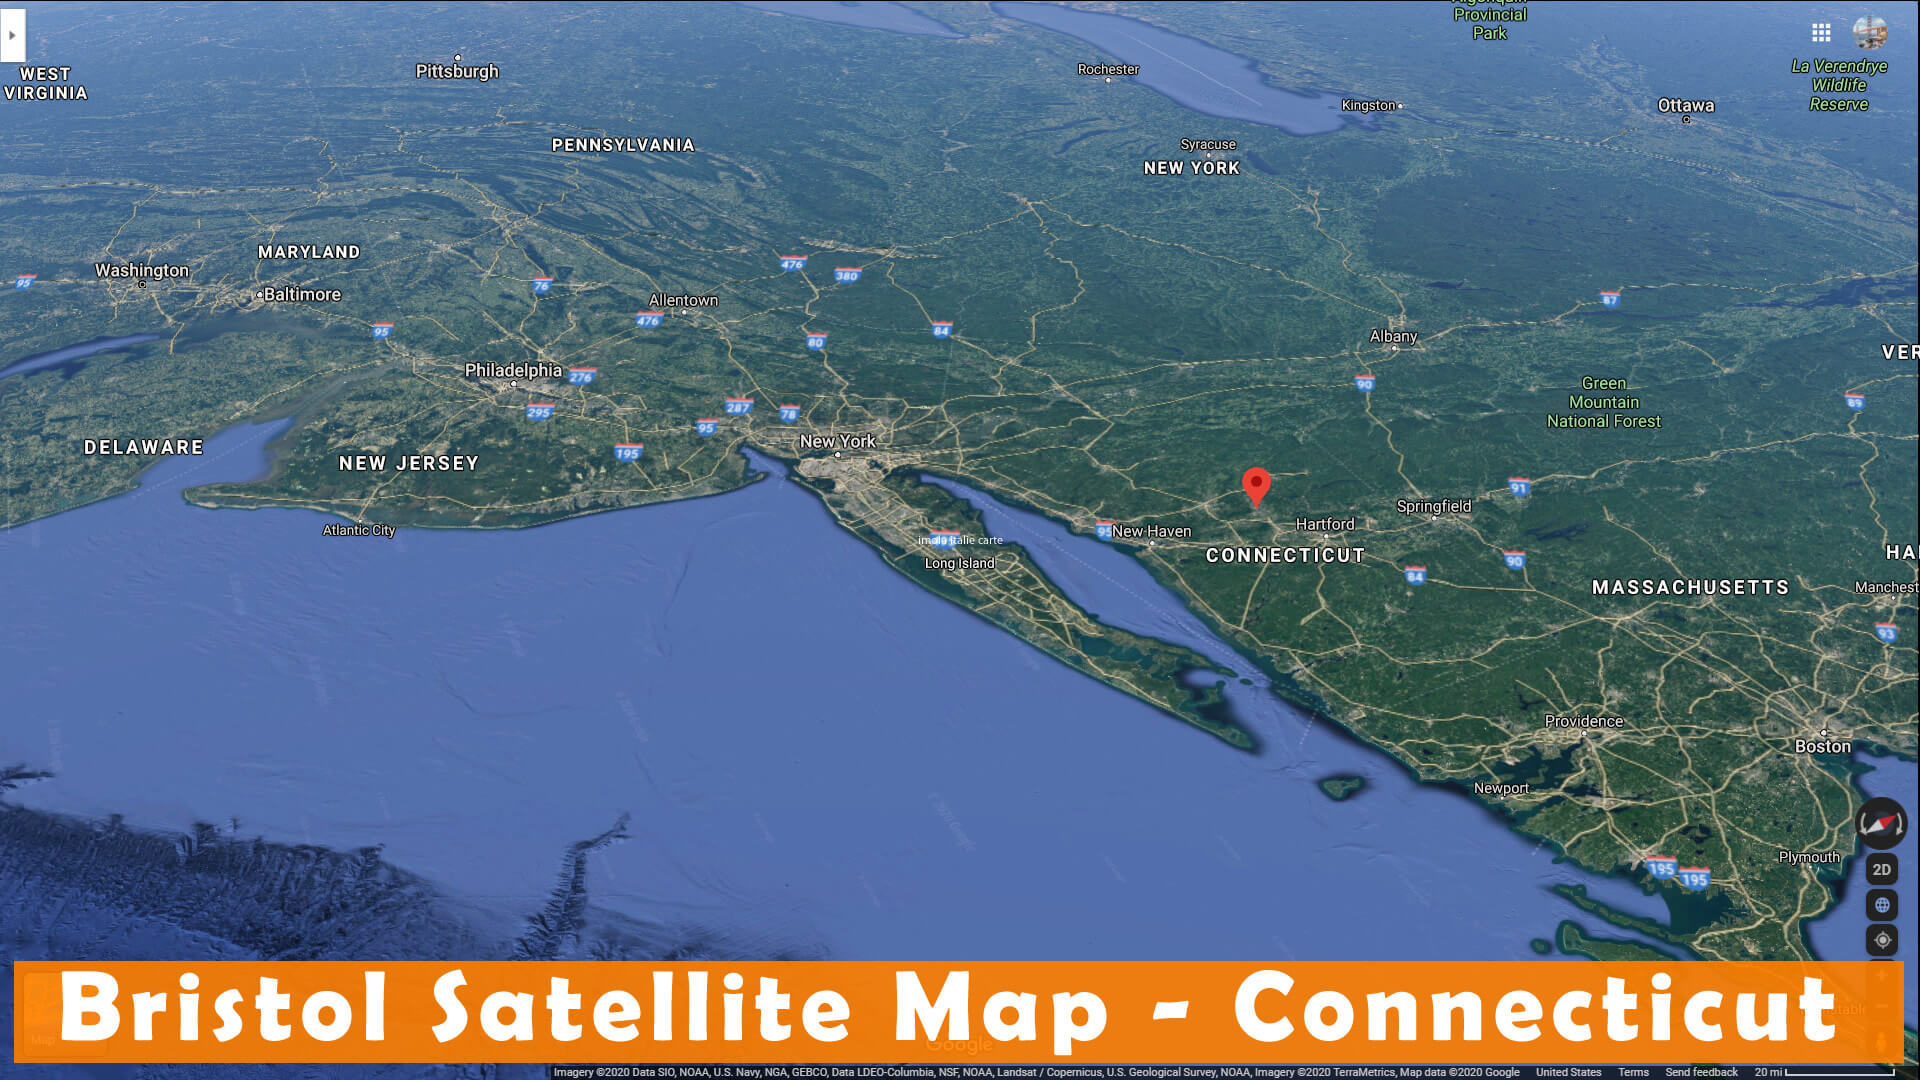 Bristol Satellite Map Connecticut